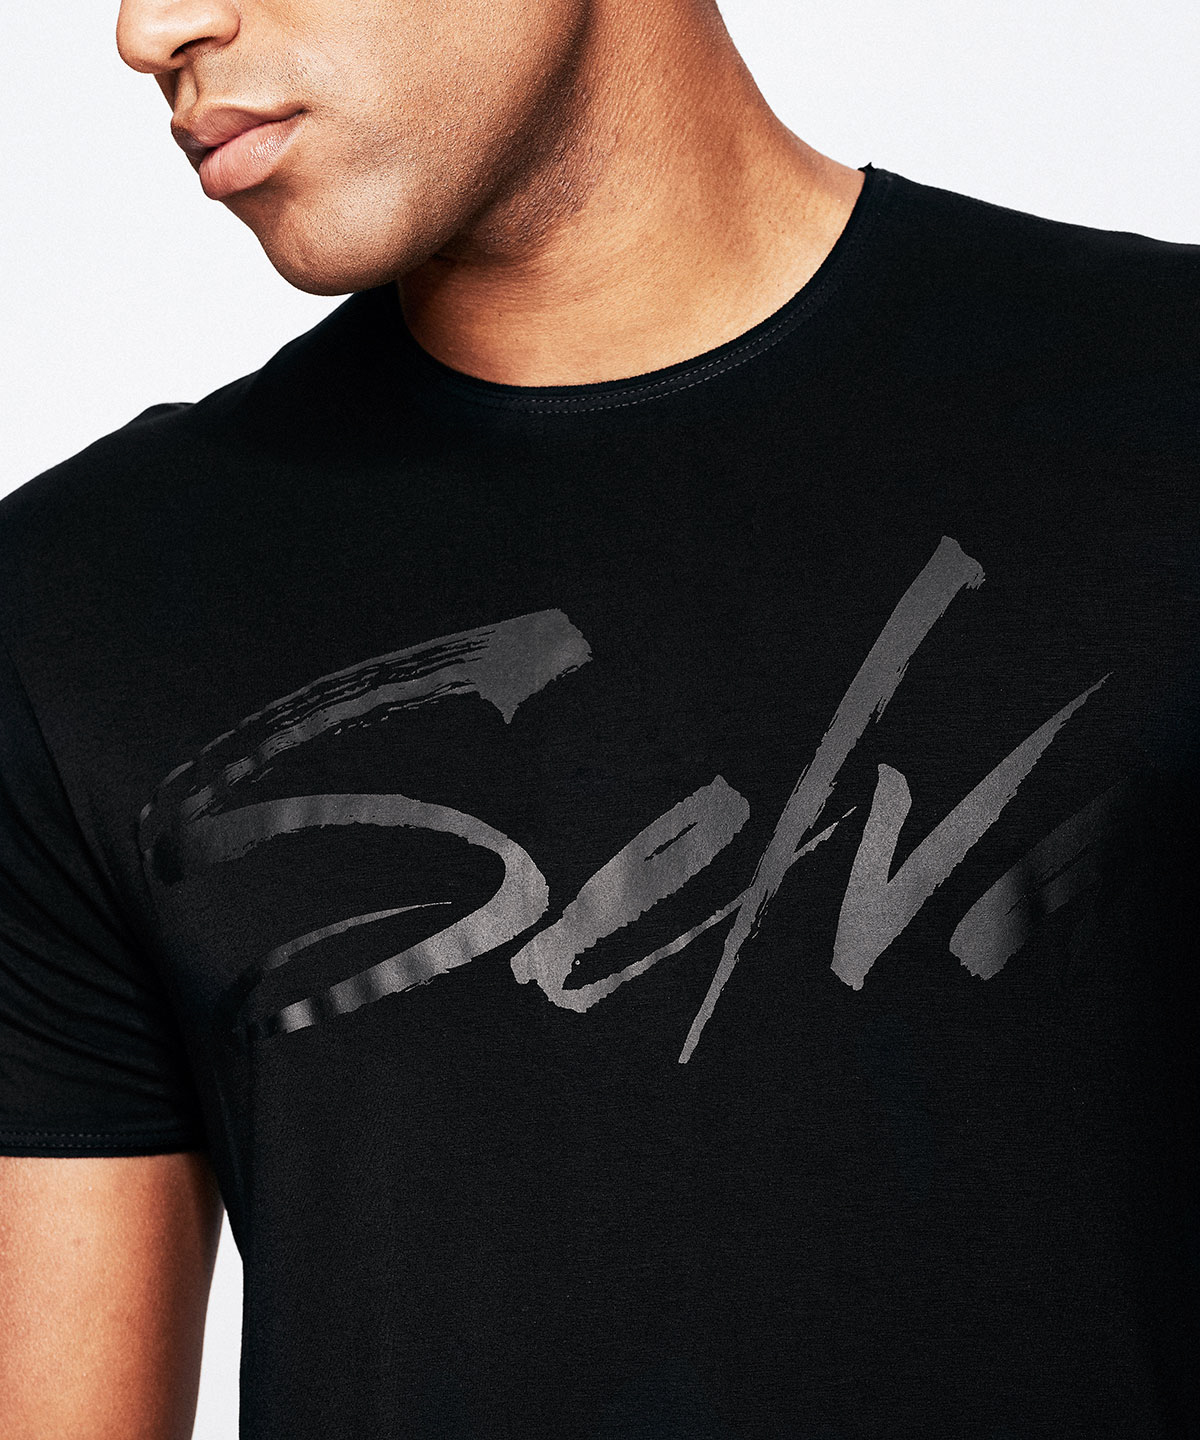 SELVA T-shirt Black